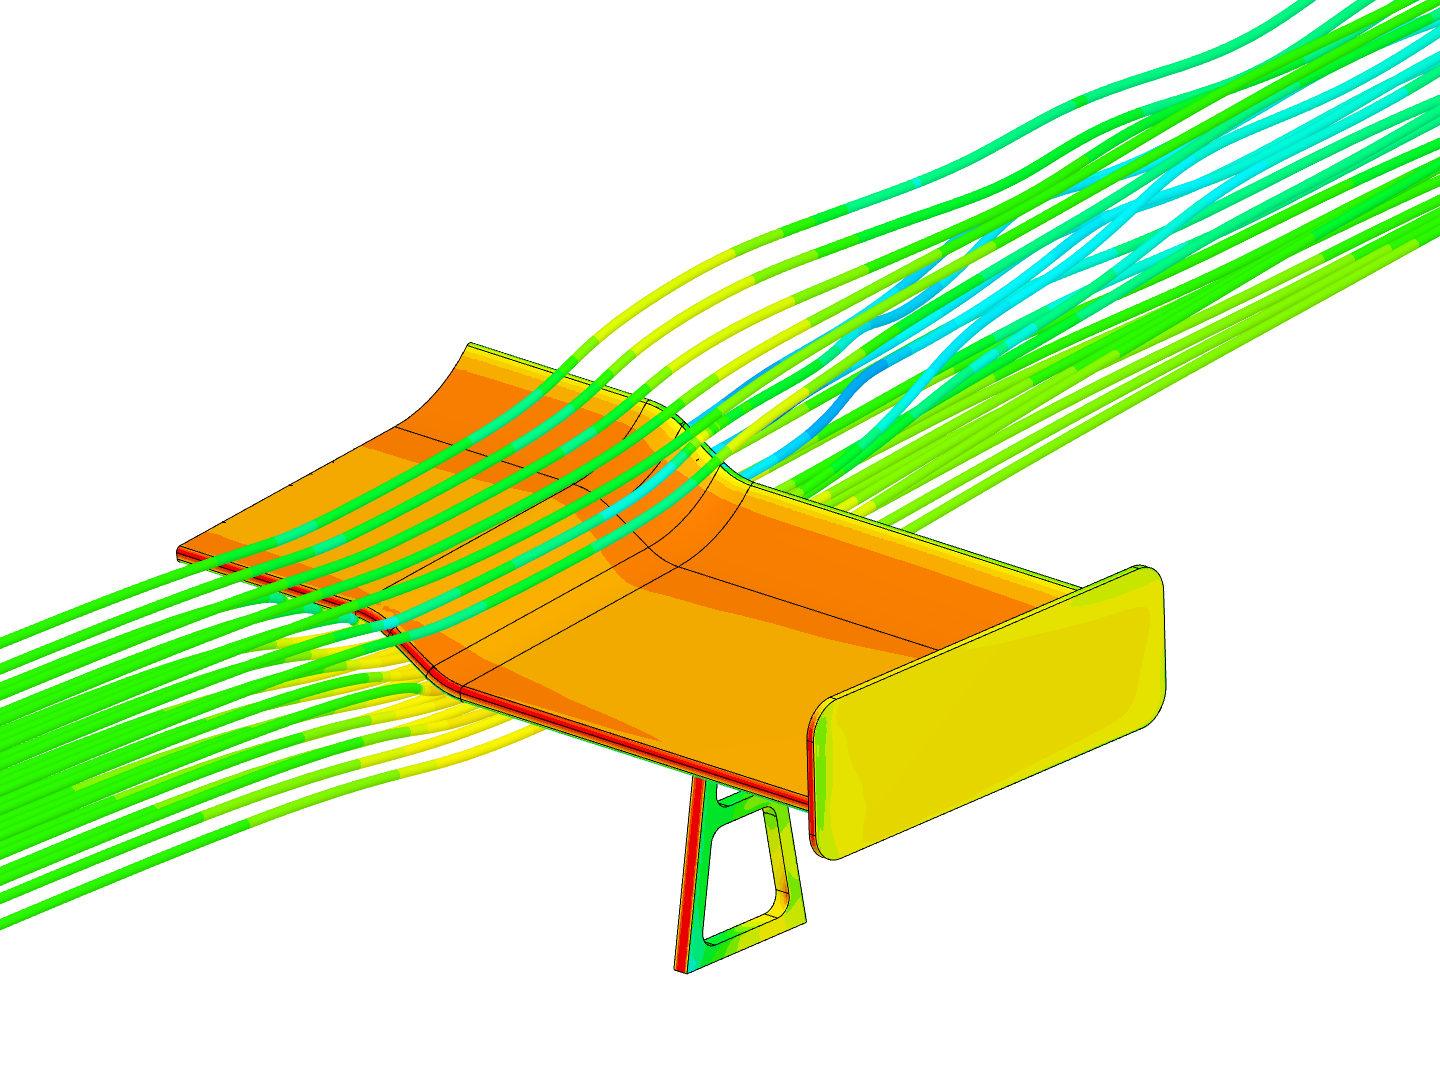 Airflow around spoiler CFD simulation Coursera image